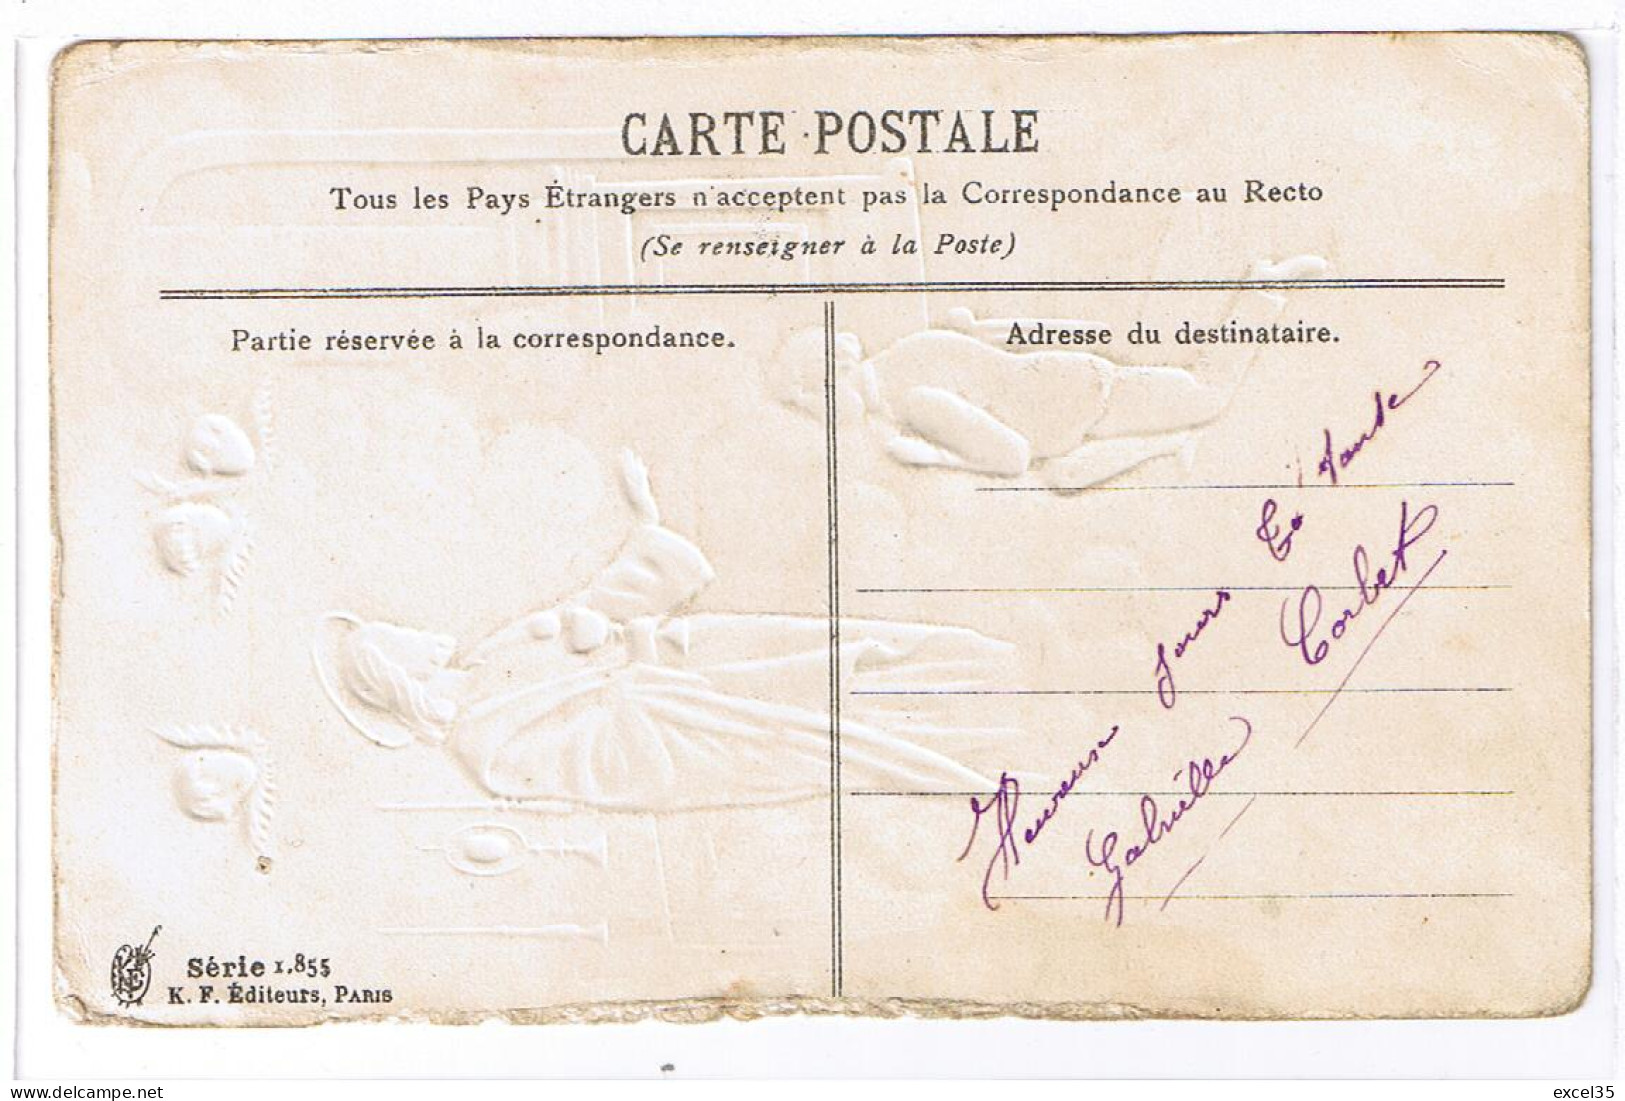 Souvenir De Première Communion Motifs En Relief Par Gaufrage - K F Editeurs, Paris - Série 1.855 - Comunioni